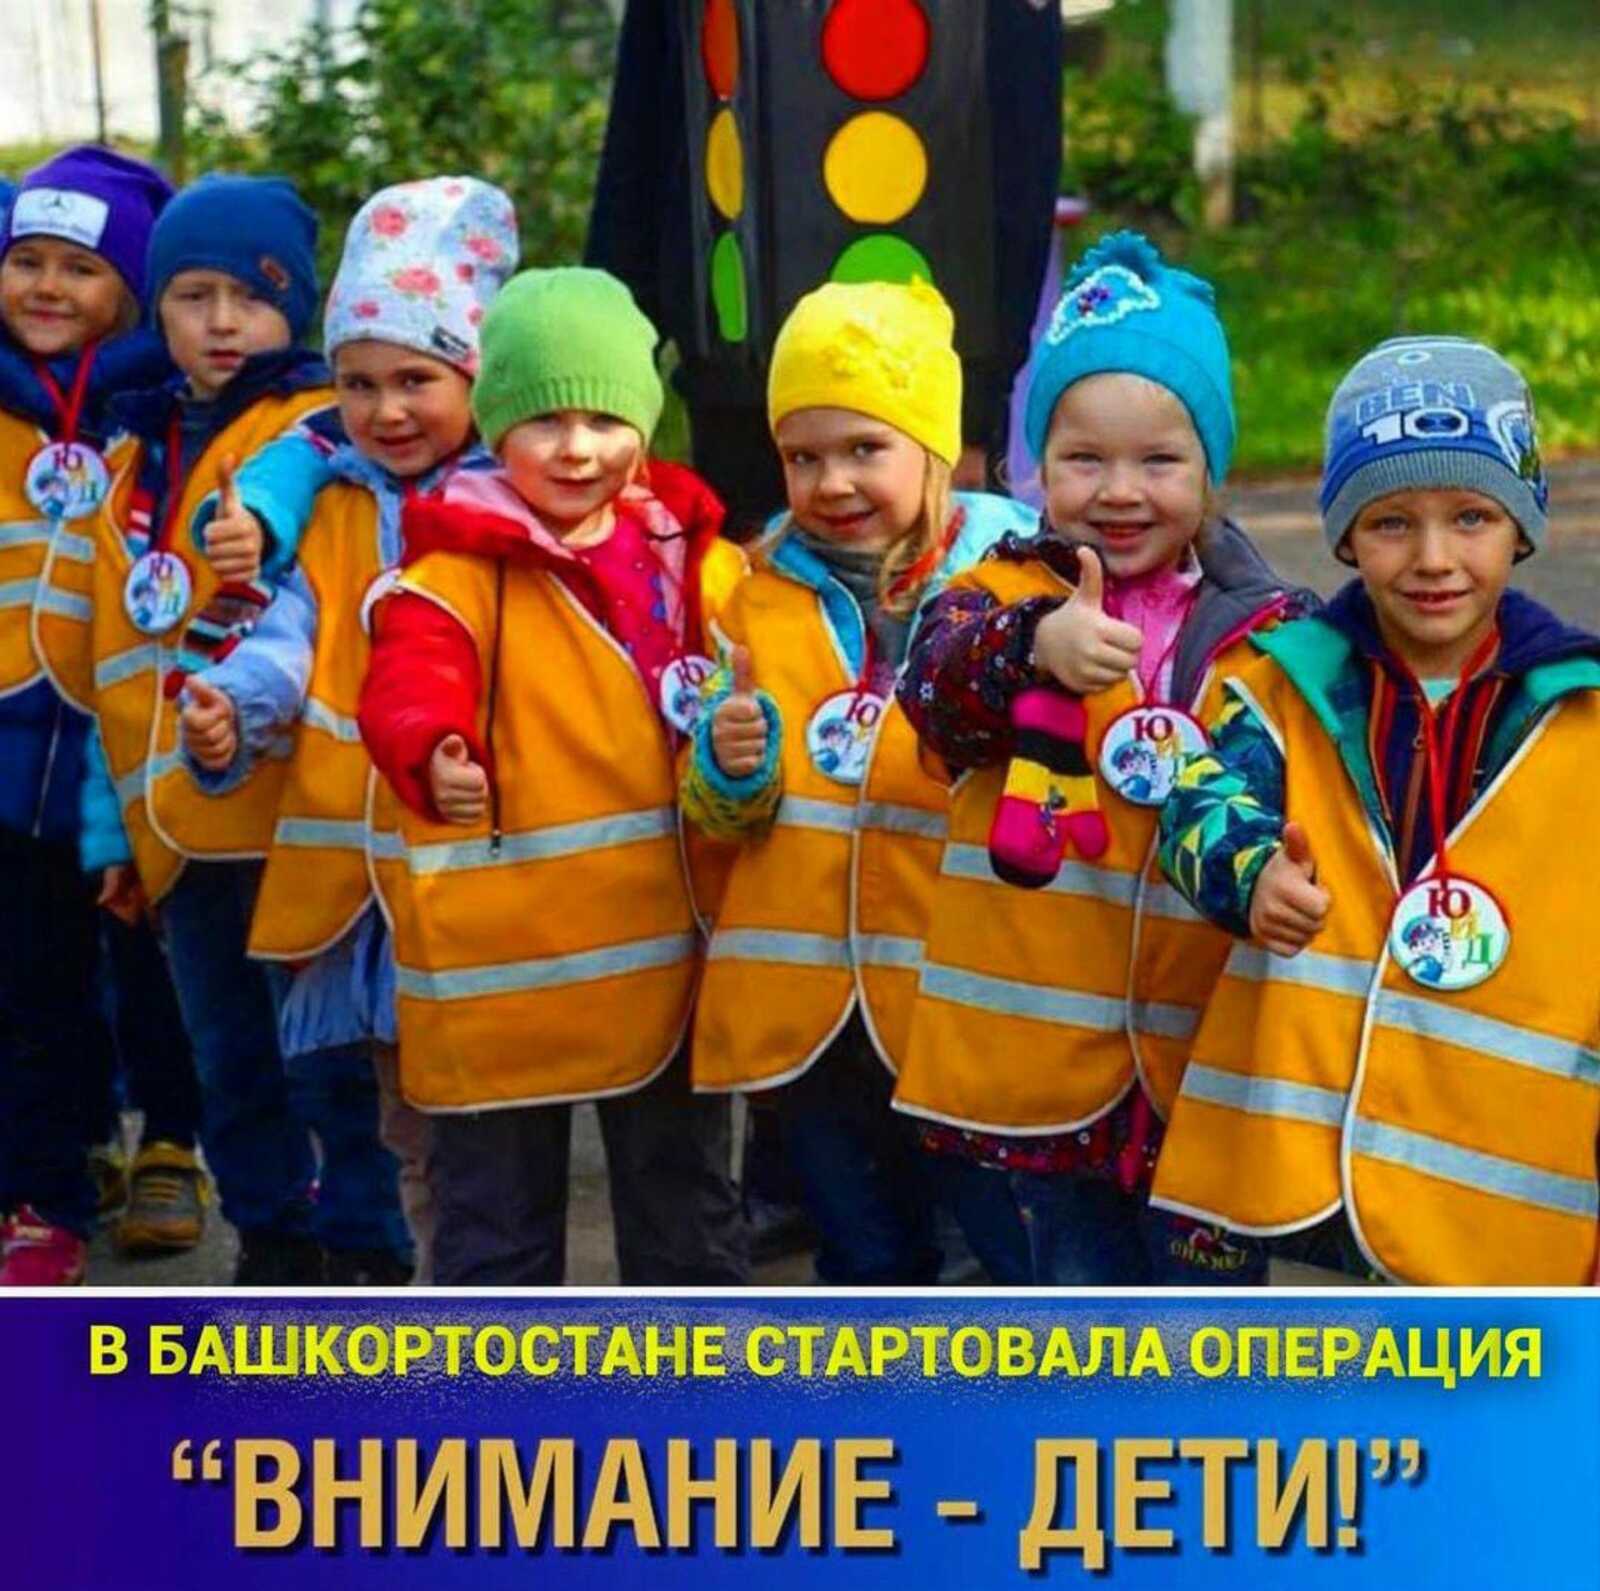 В Башкортостане ГИБДД и органы образования с сегодняшнего дня начали проведение профилактических мероприятий «Внимание – дети!»